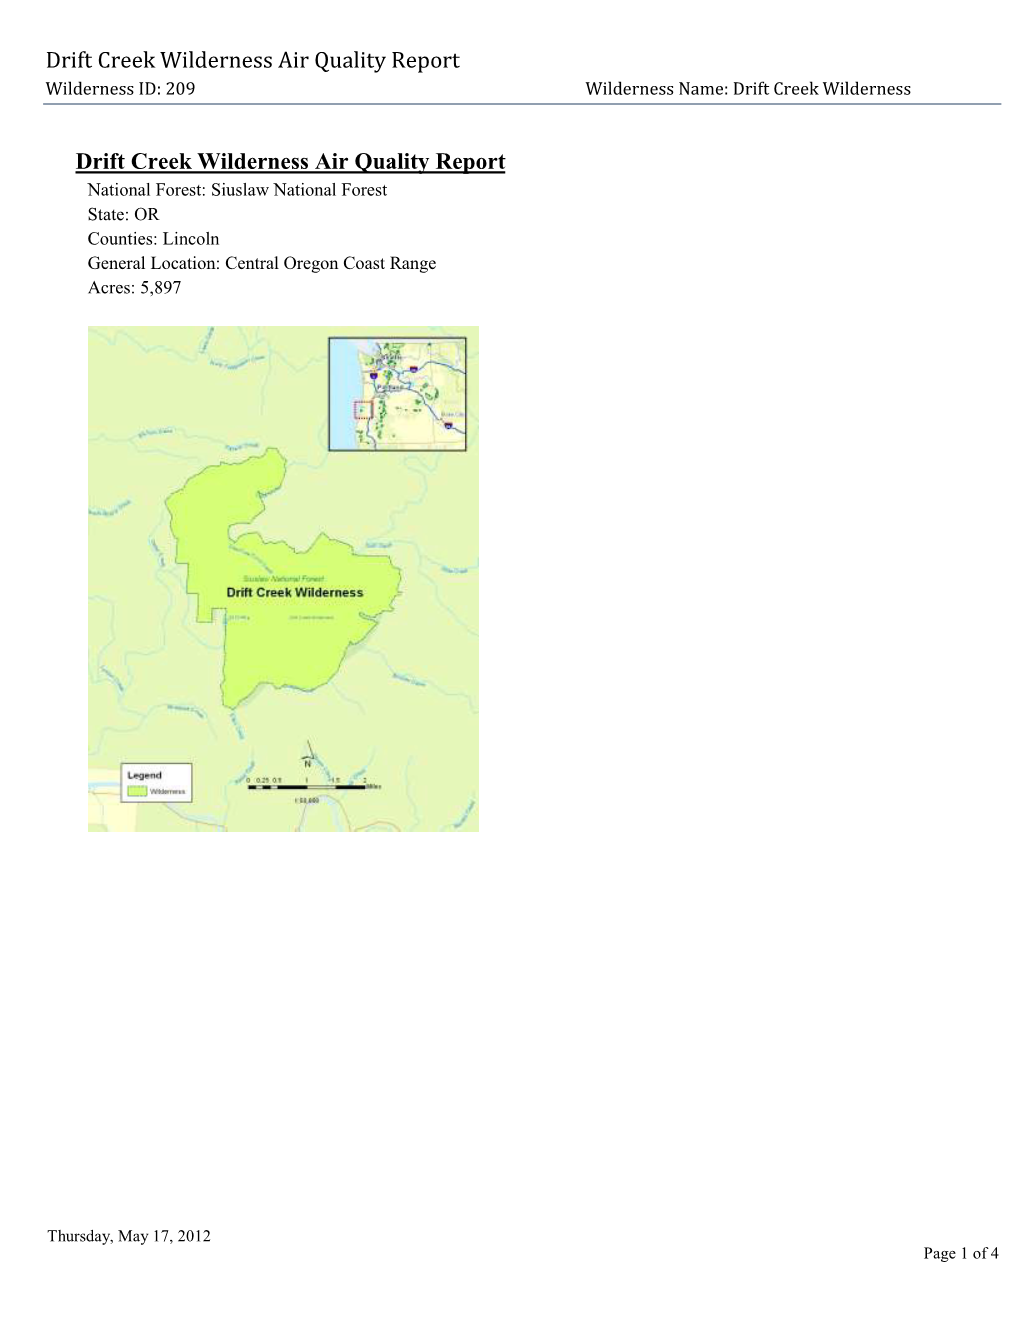 Drift Creek Wilderness Air Quality Report, 2012